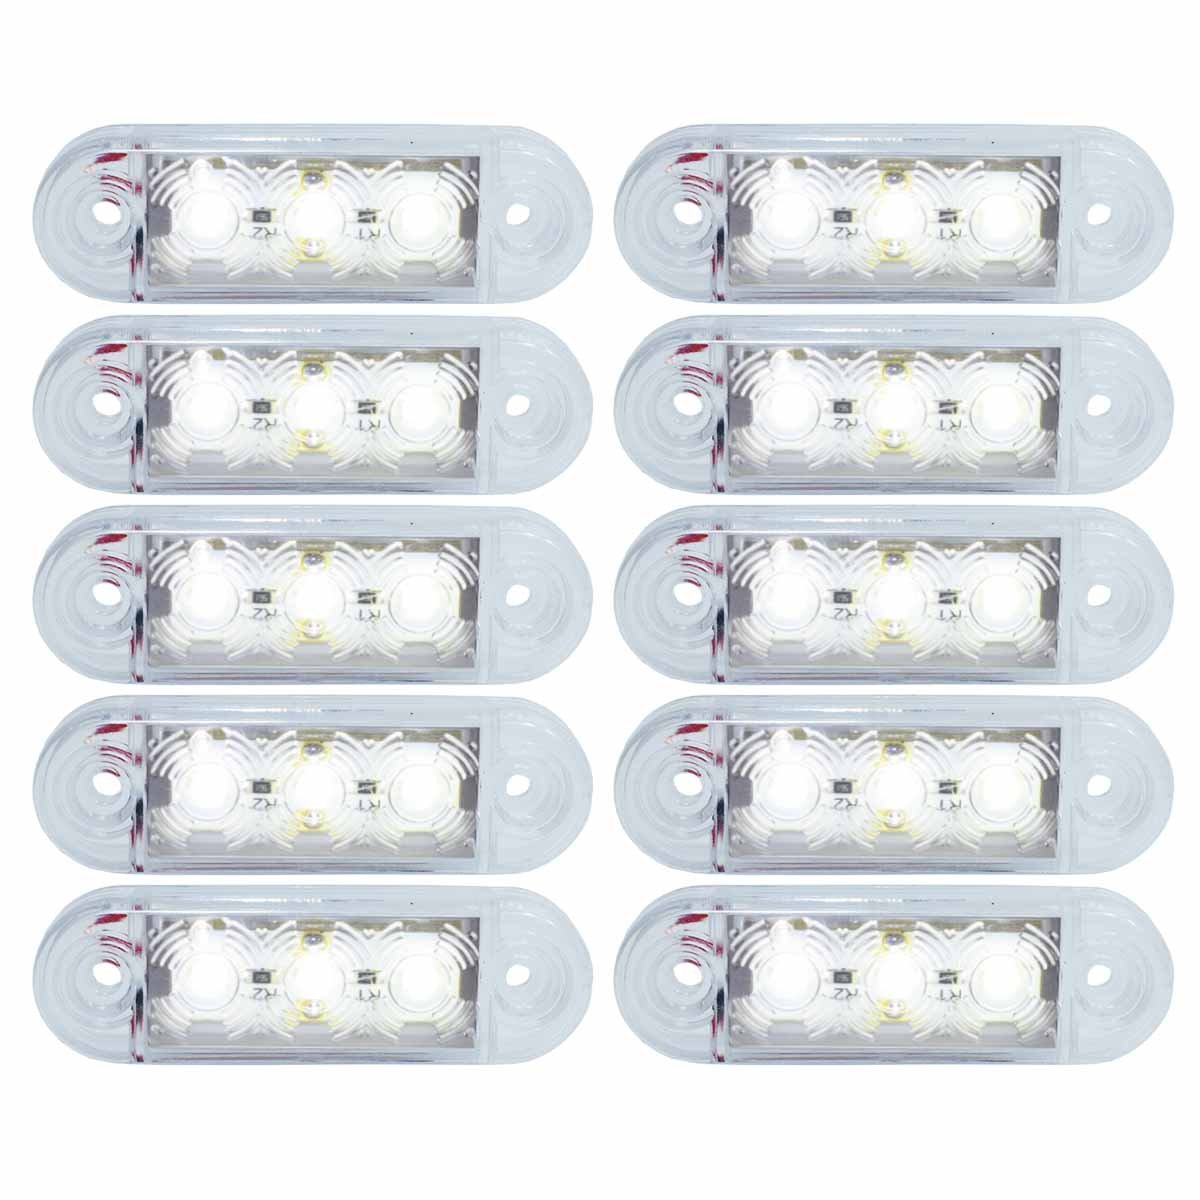 10x 3 LED Begrenzunsleuchten Positionleuchten Seitenleuchten 12V 24V Volt für LKW Bus Trailer Indikator Licht Seitenmarkierungsleuchte in 3 Farben (Rot, Gelb, Weiss) (Weiß) von Formplas